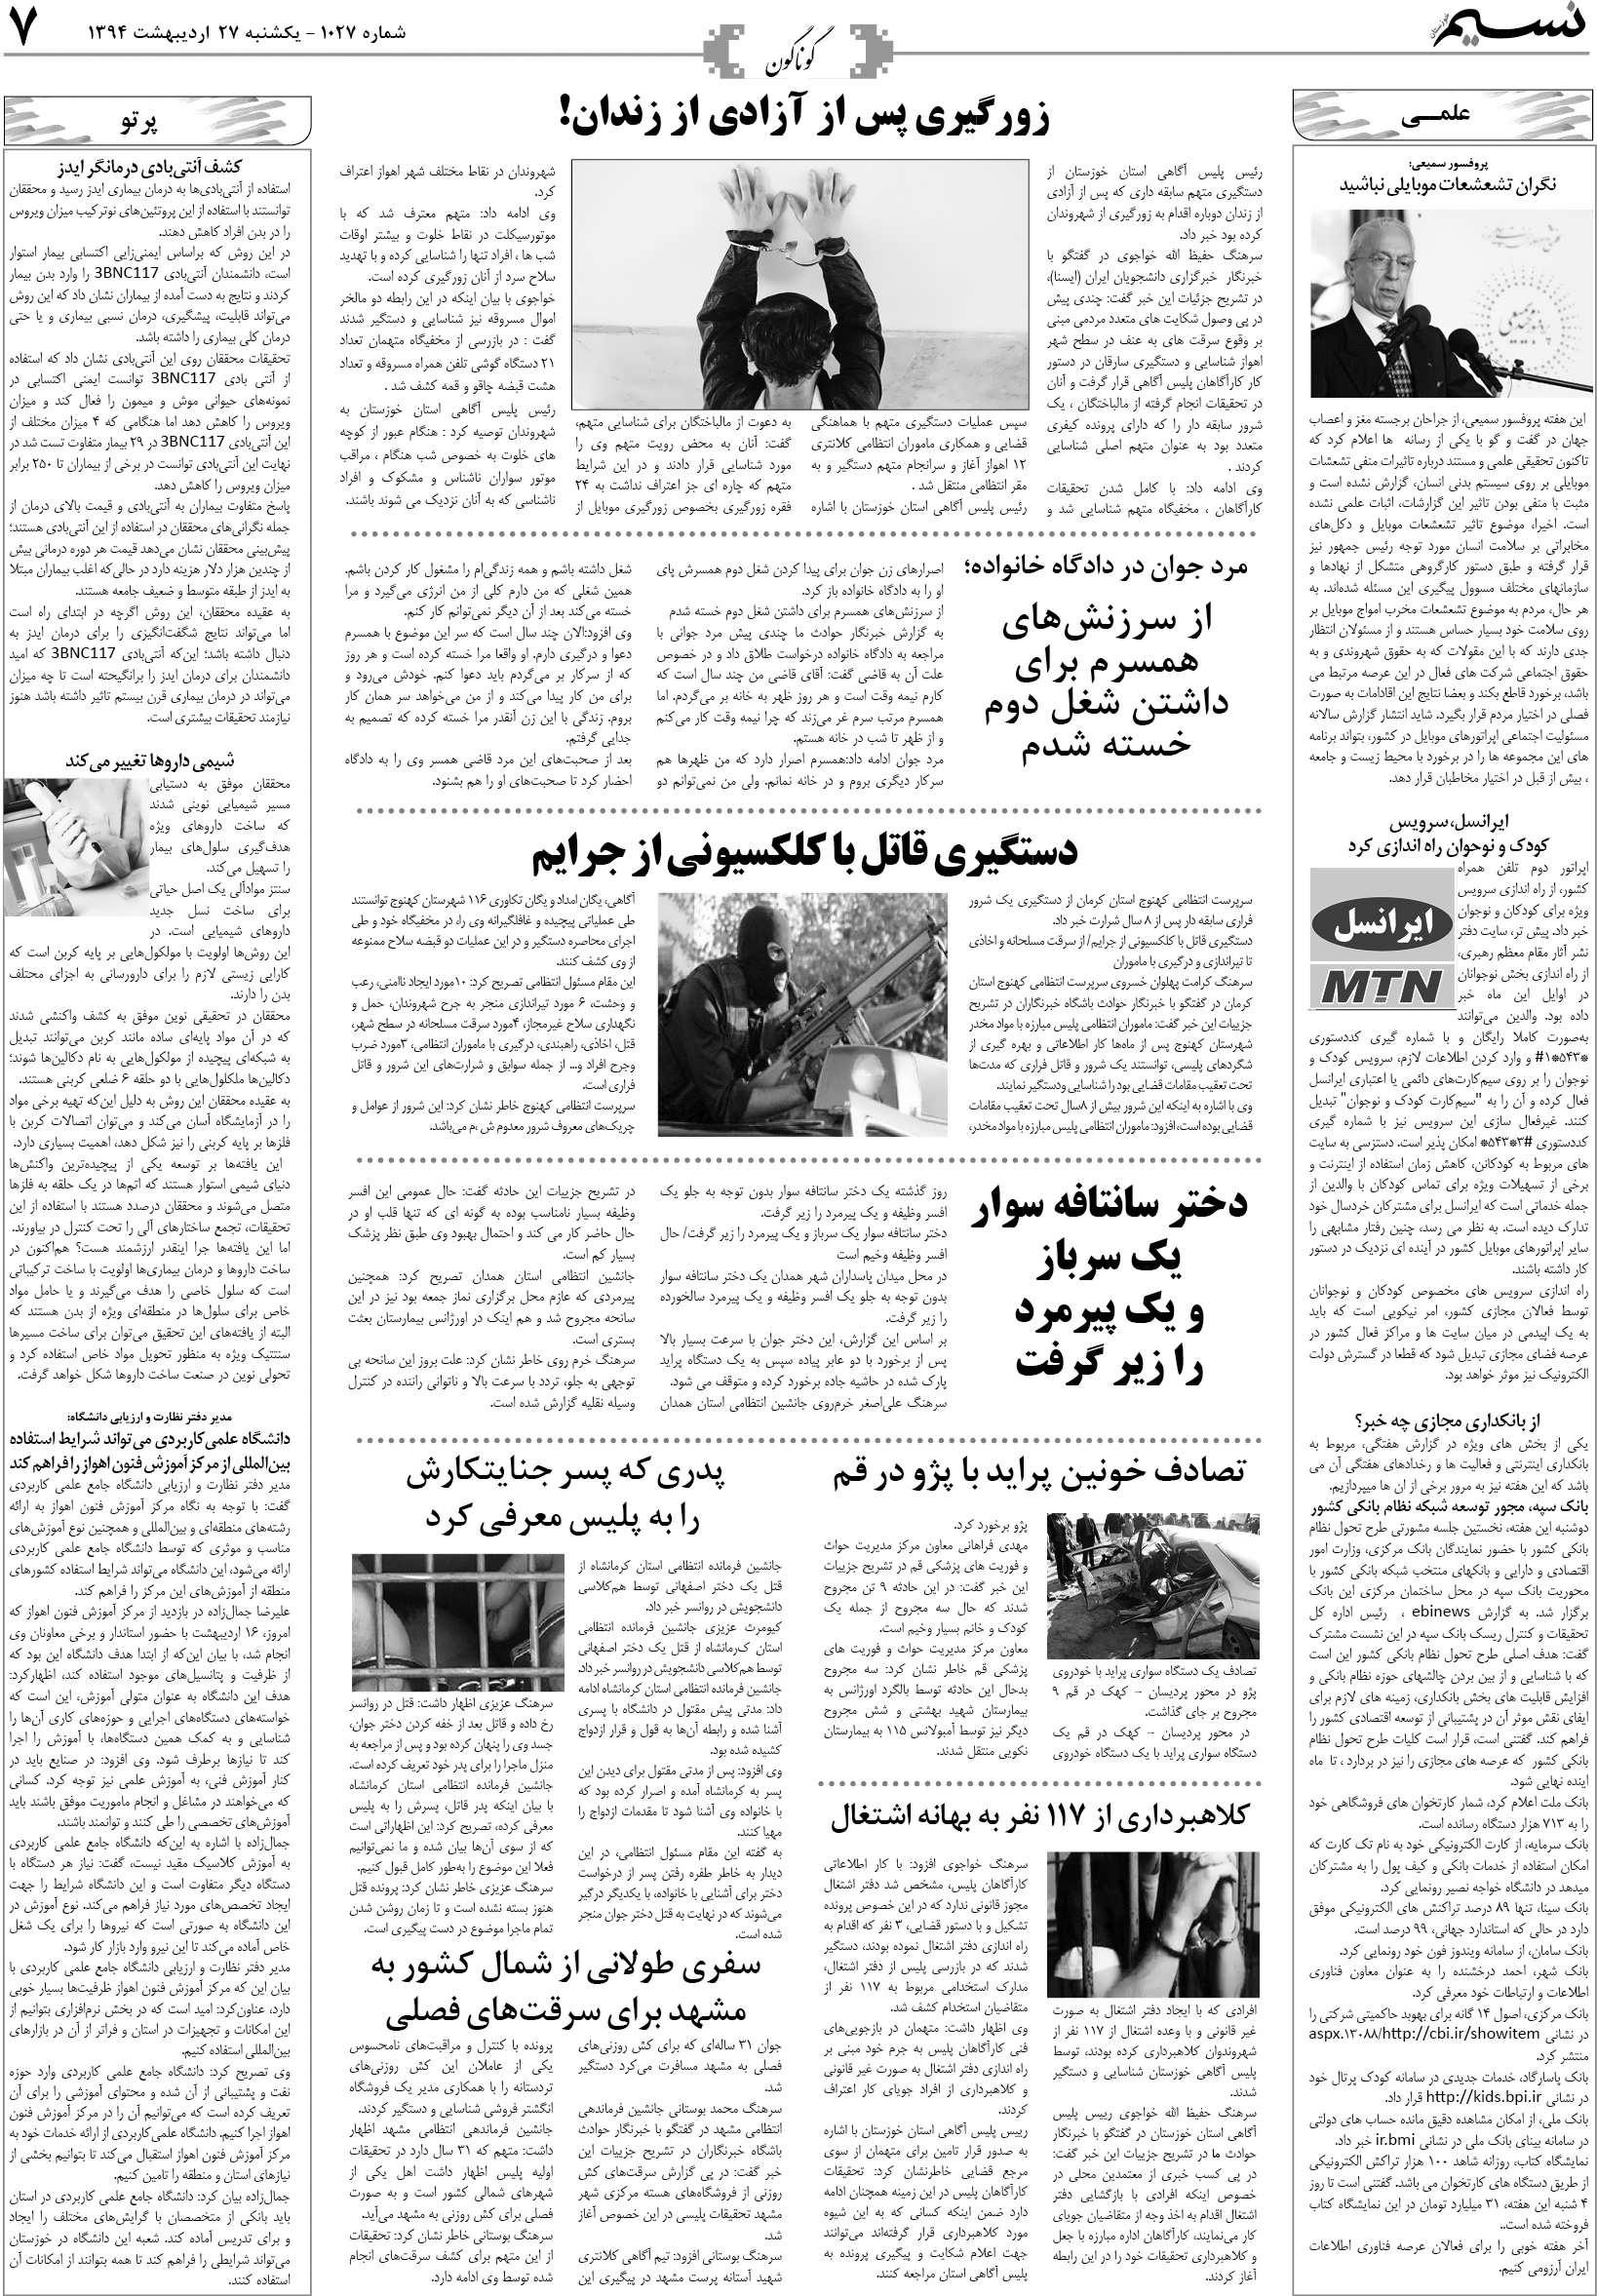 صفحه گوناگون روزنامه نسیم شماره 1027